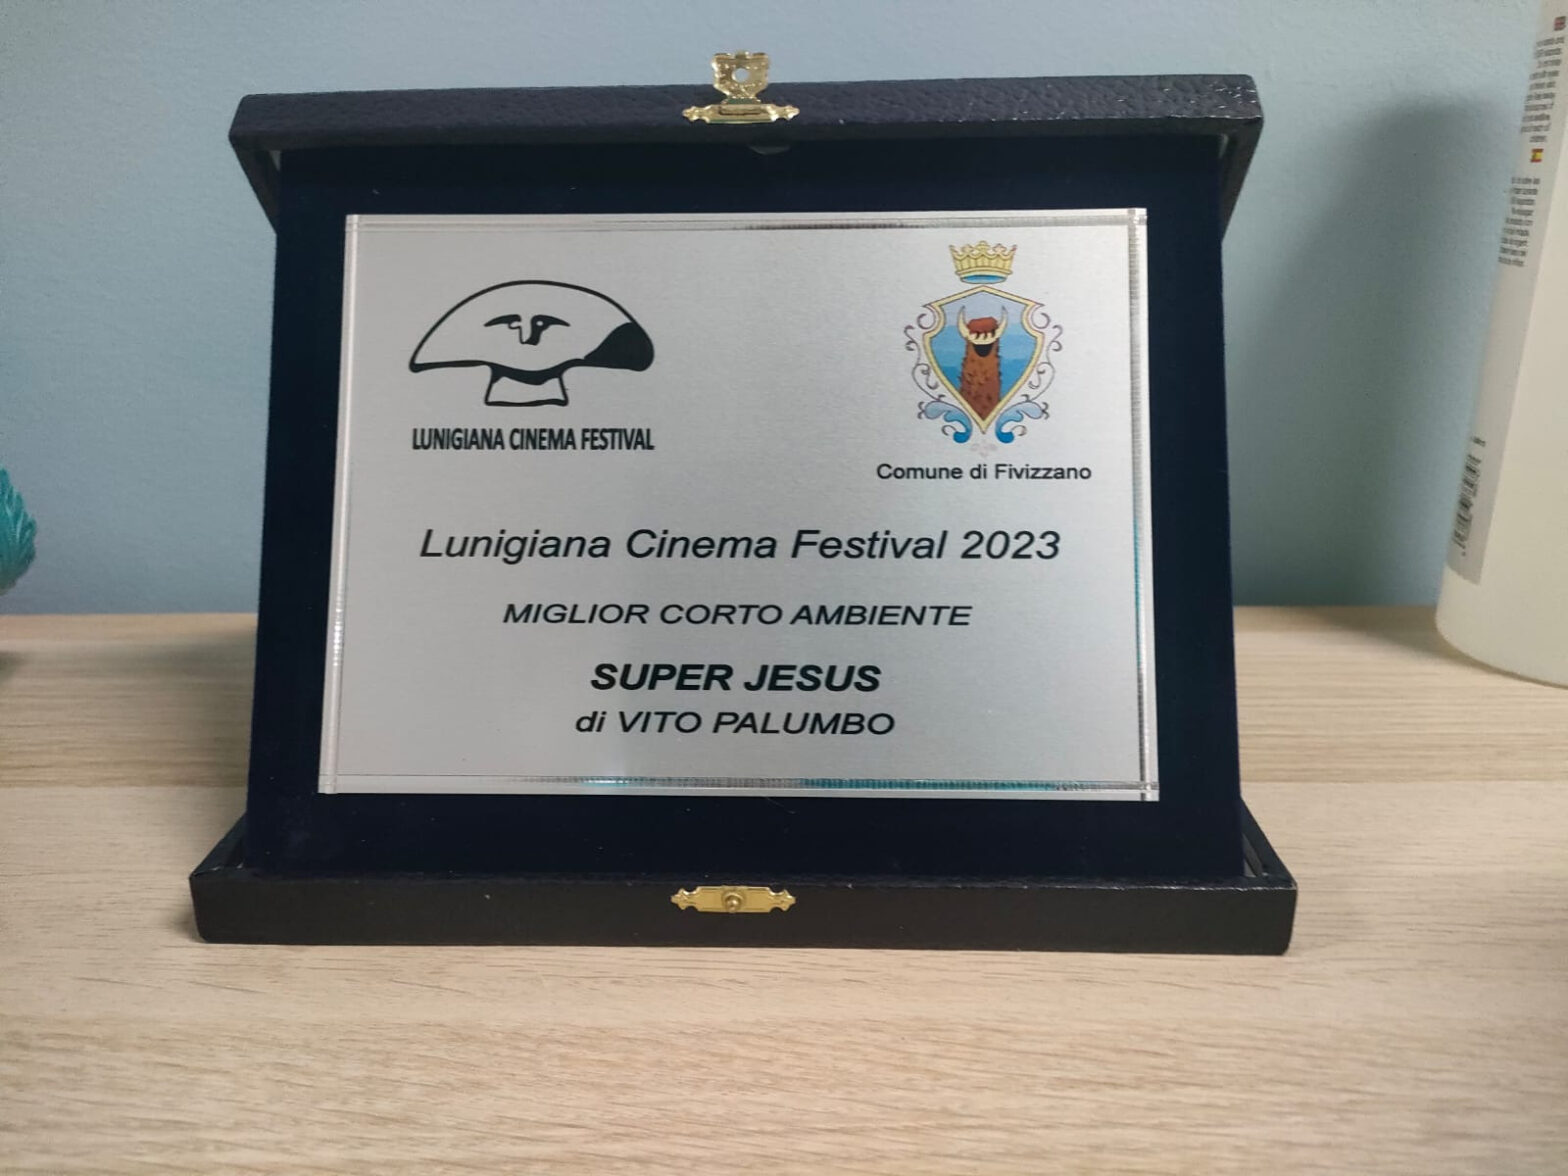 Super Jesus vince come “miglior corto” nella sezione Ambiente al Lunigiana Cinema Festival 2023